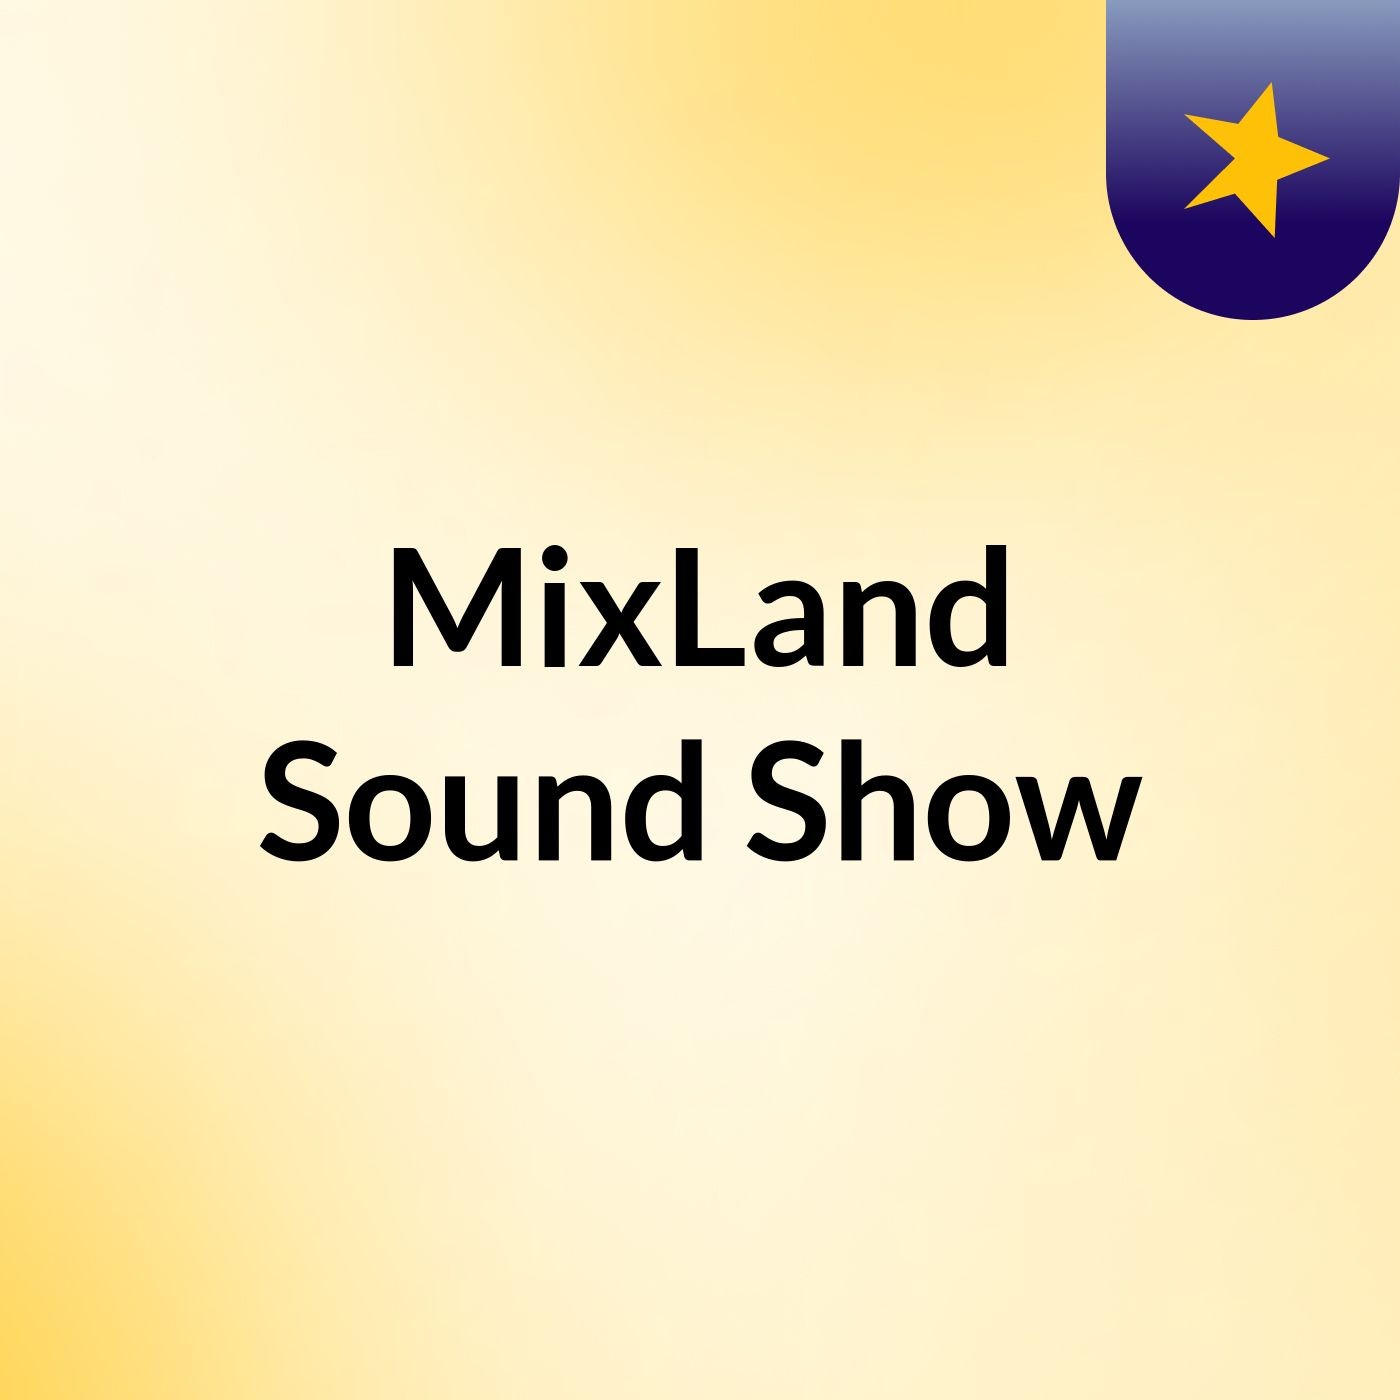 MixLand Sound Show